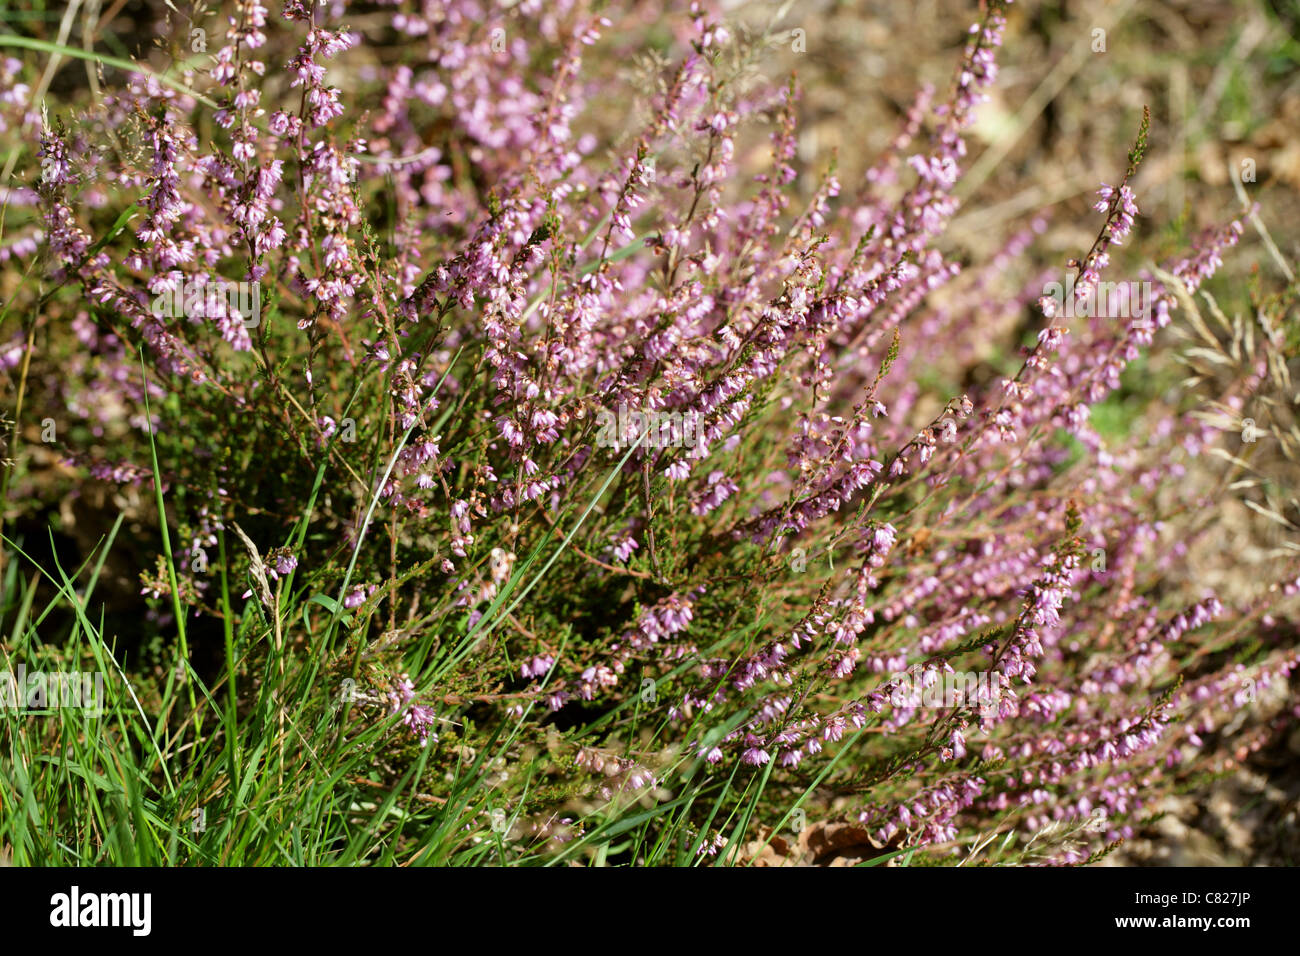 Common Heather or Ling, Calluna vulgaris, Ericaceae. Stock Photo